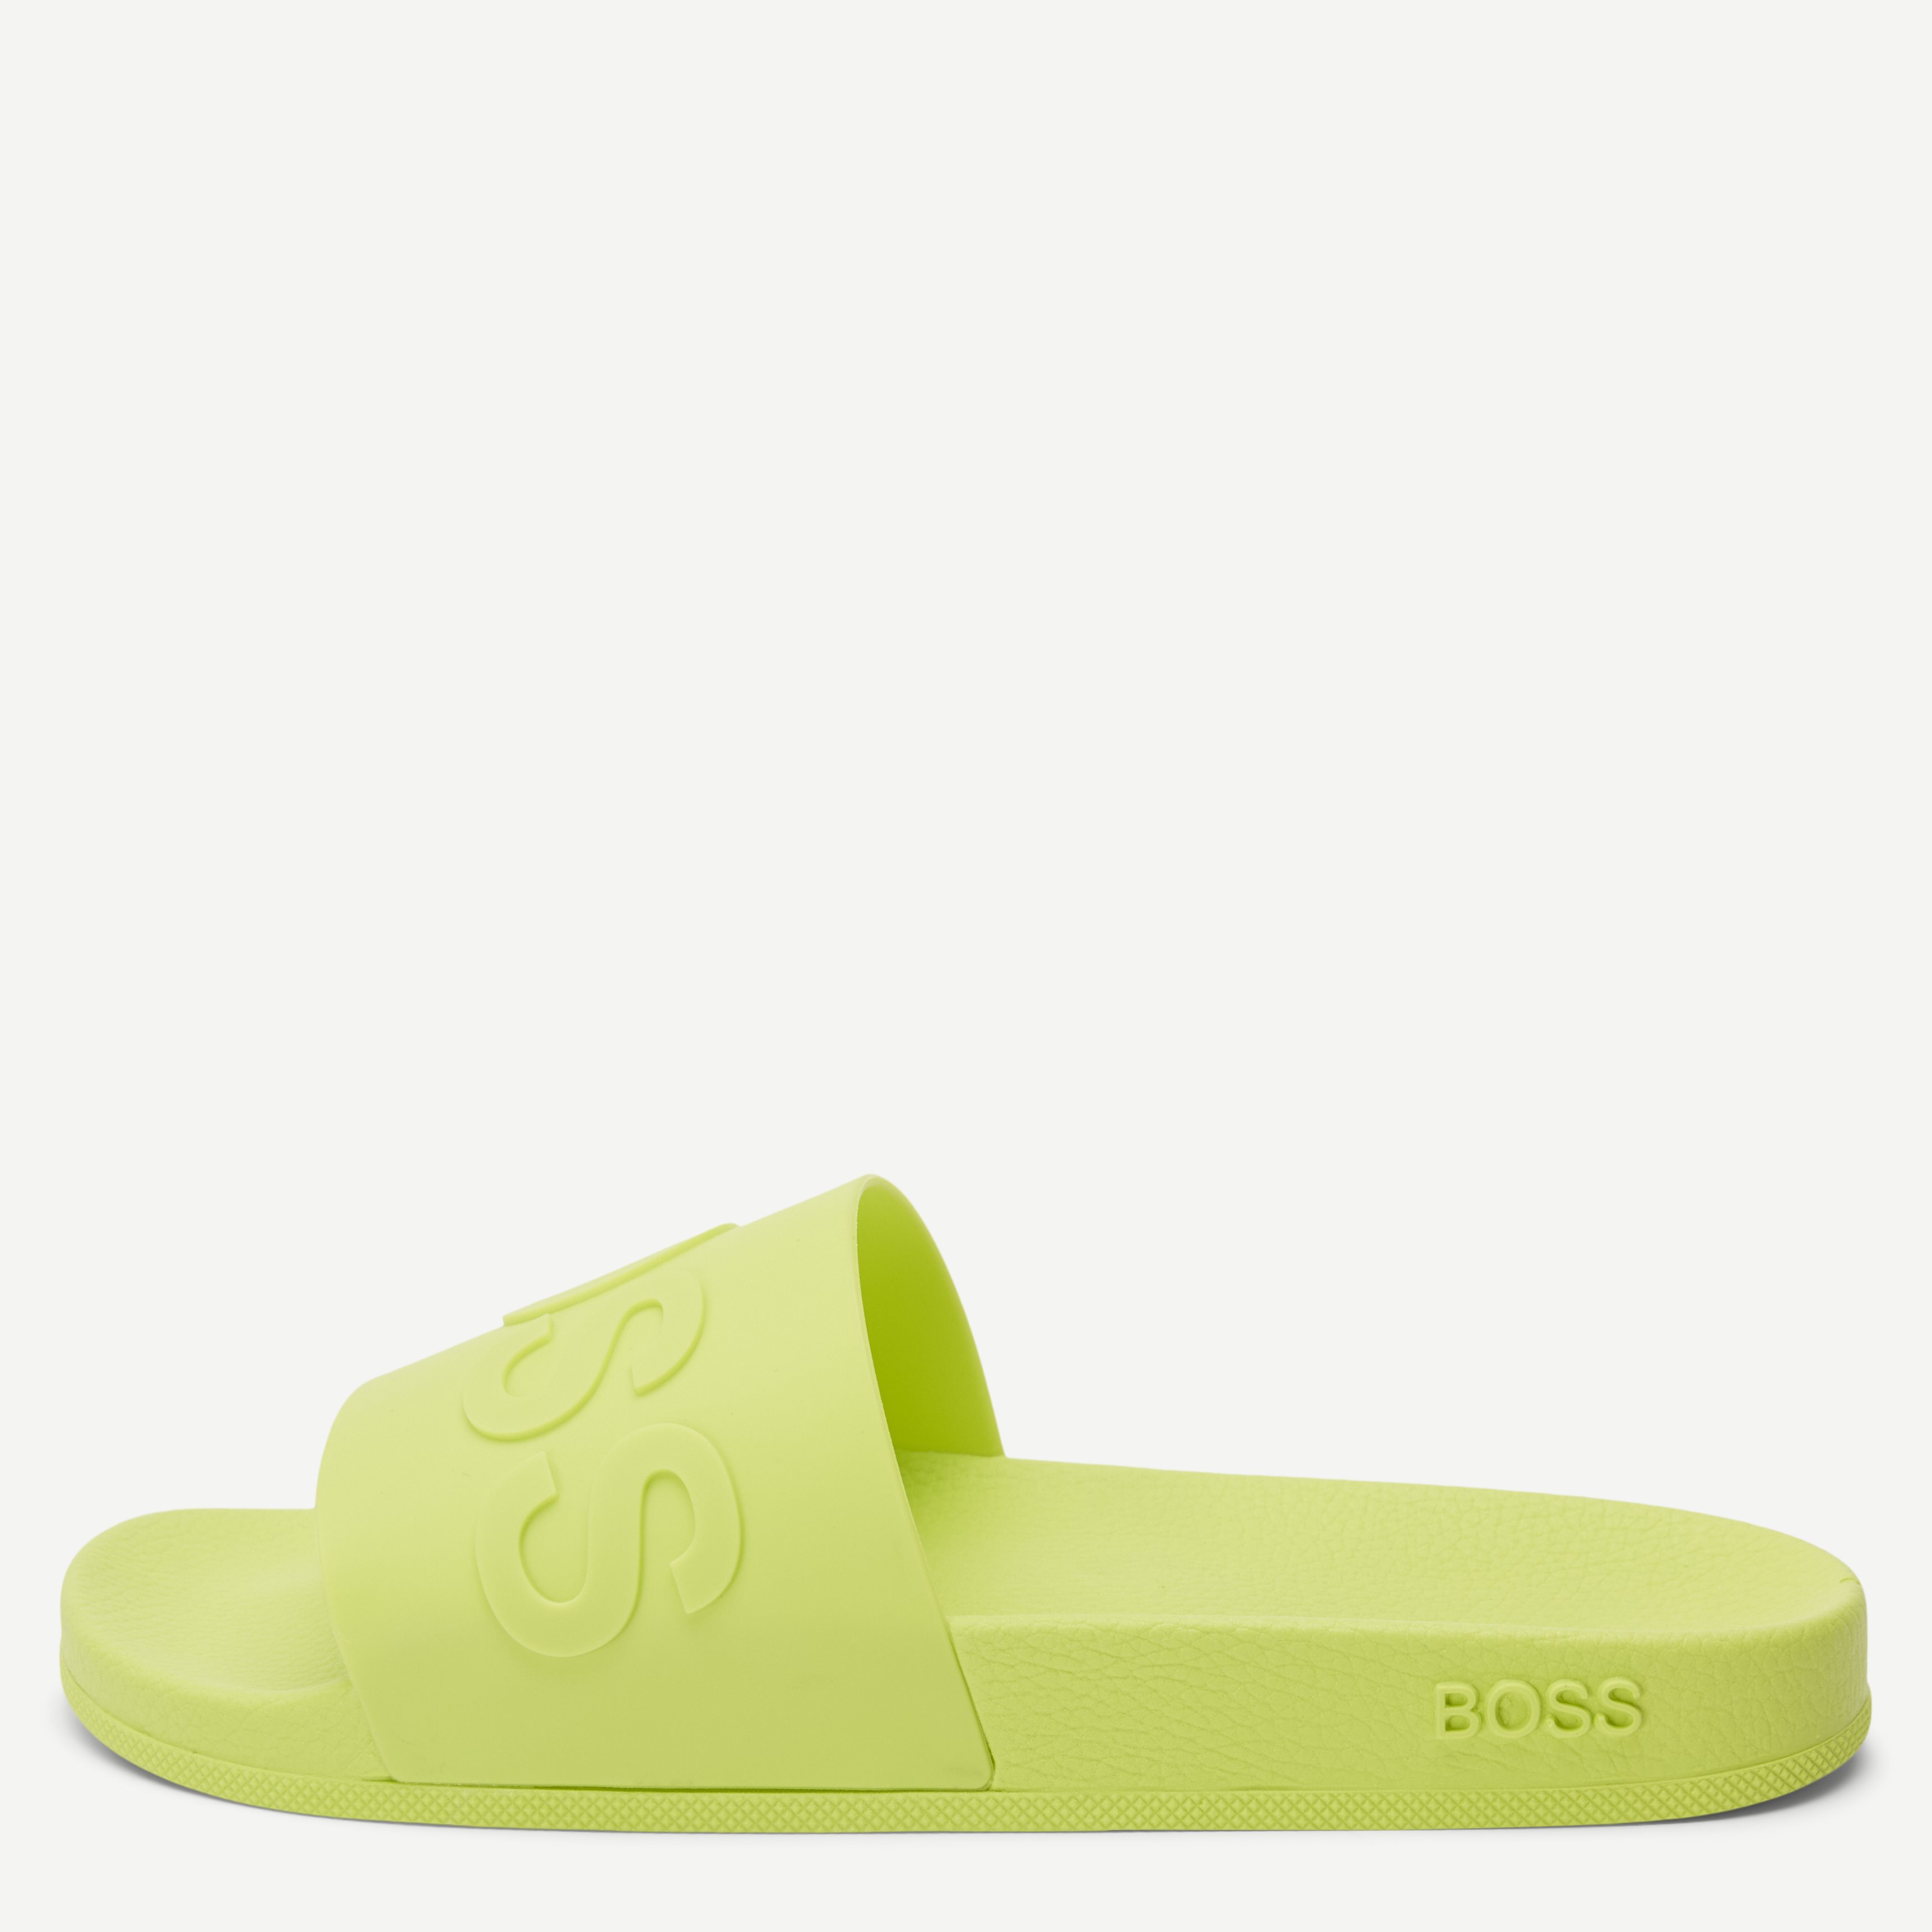 Bay _Slid_rblg Sandal - Shoes - Green